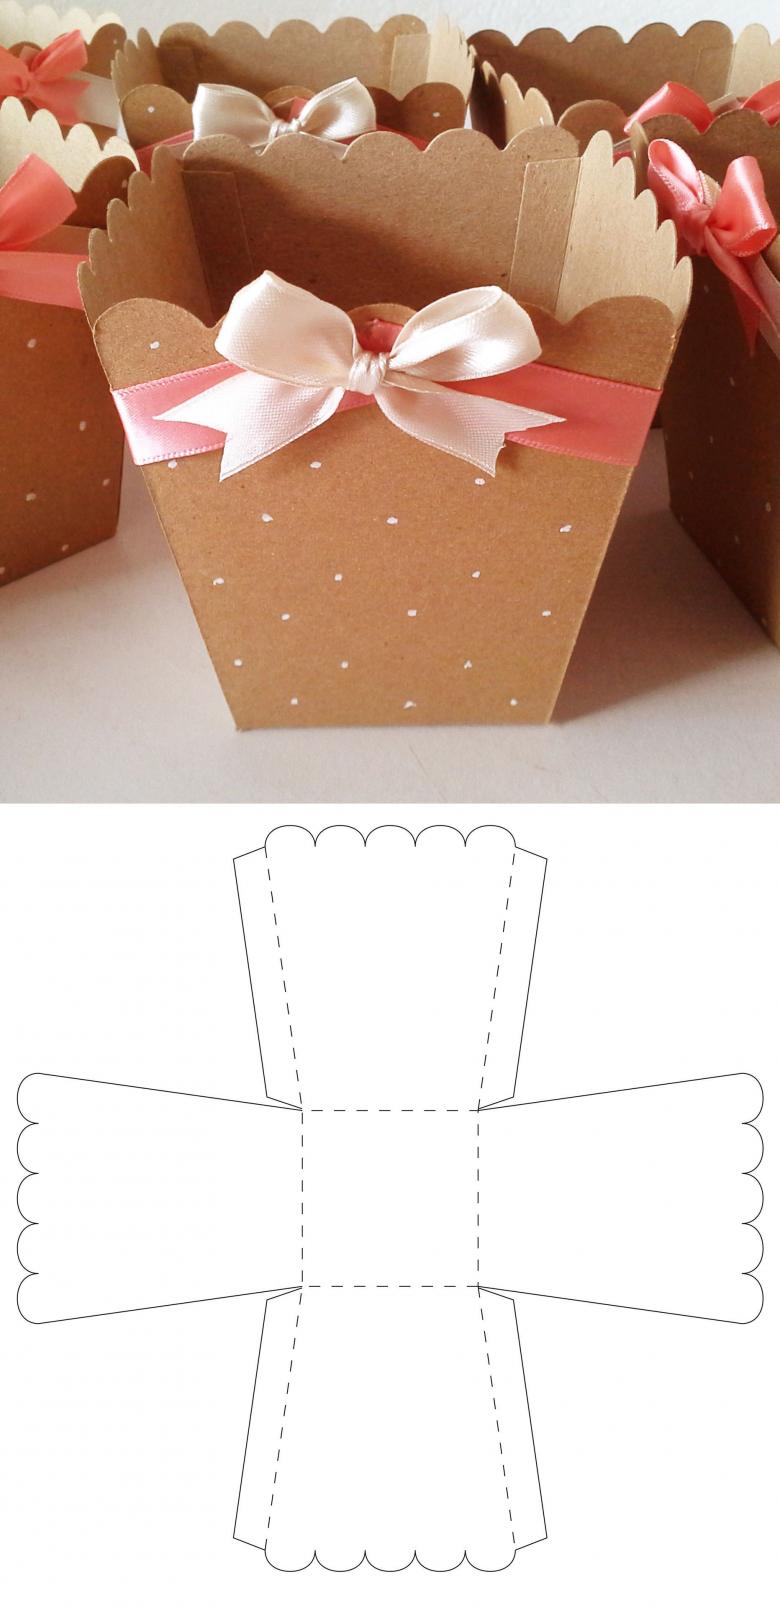 Красиво упаковать подарок — легко: 20 способов использования крафт-бумаги